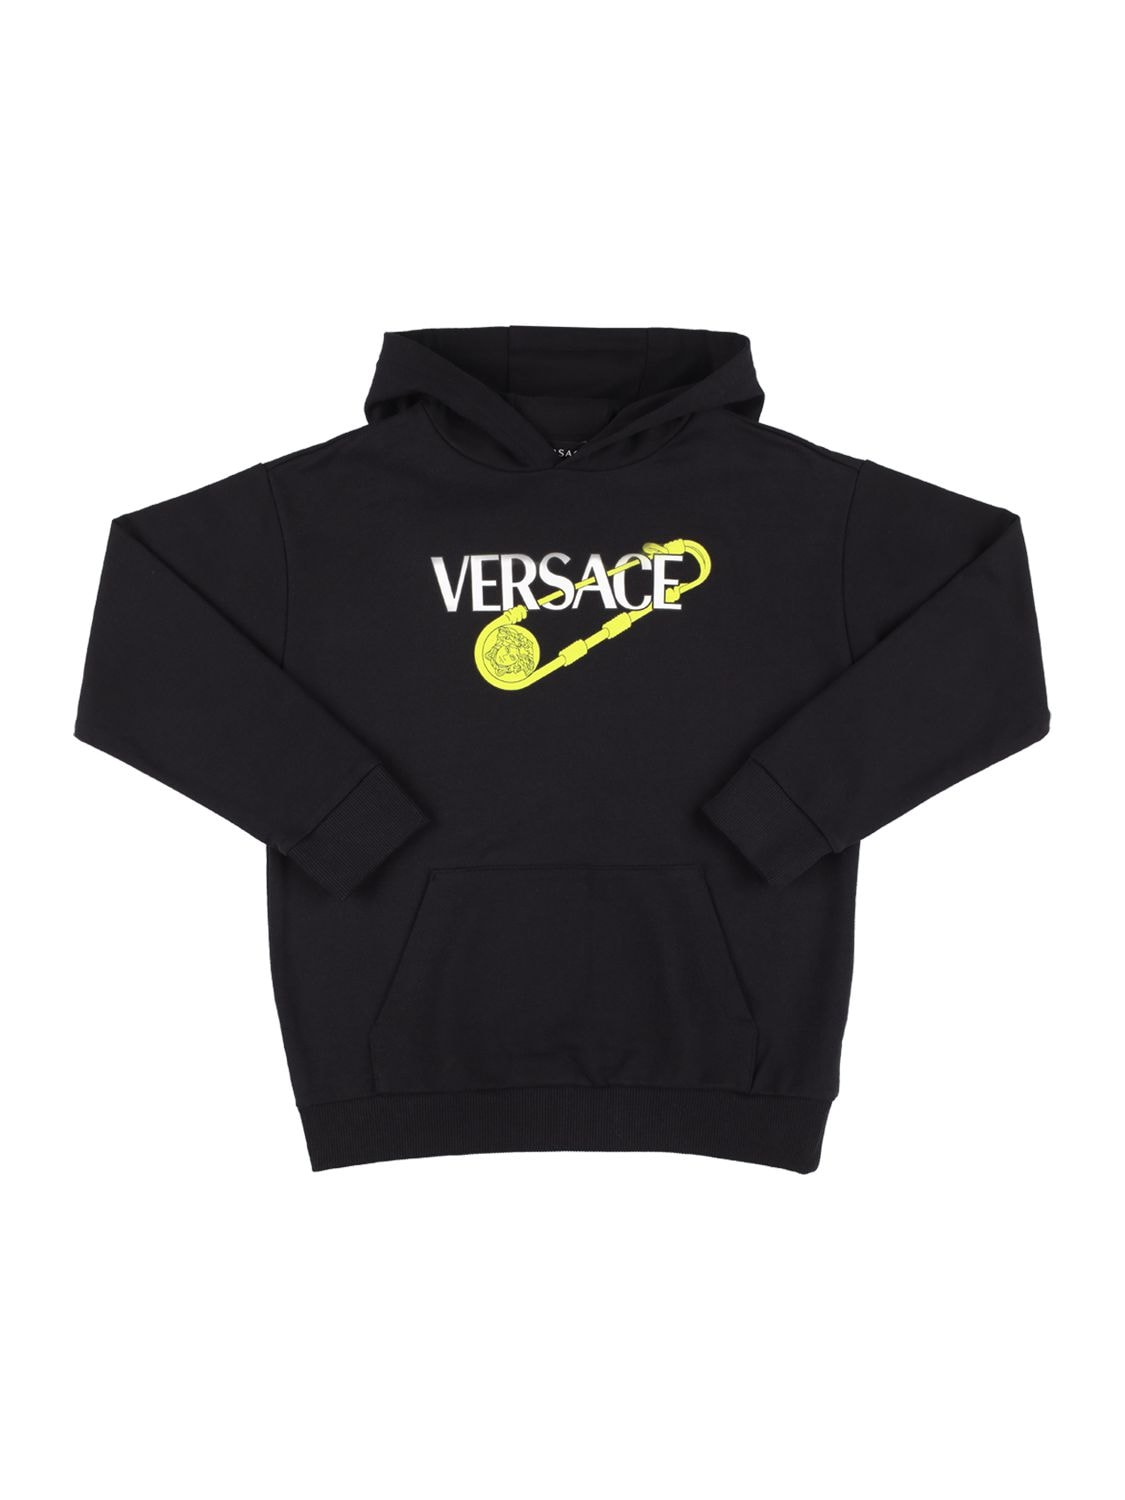 Versace Kids' Printed Cotton Sweatshirt Hoodie In Black